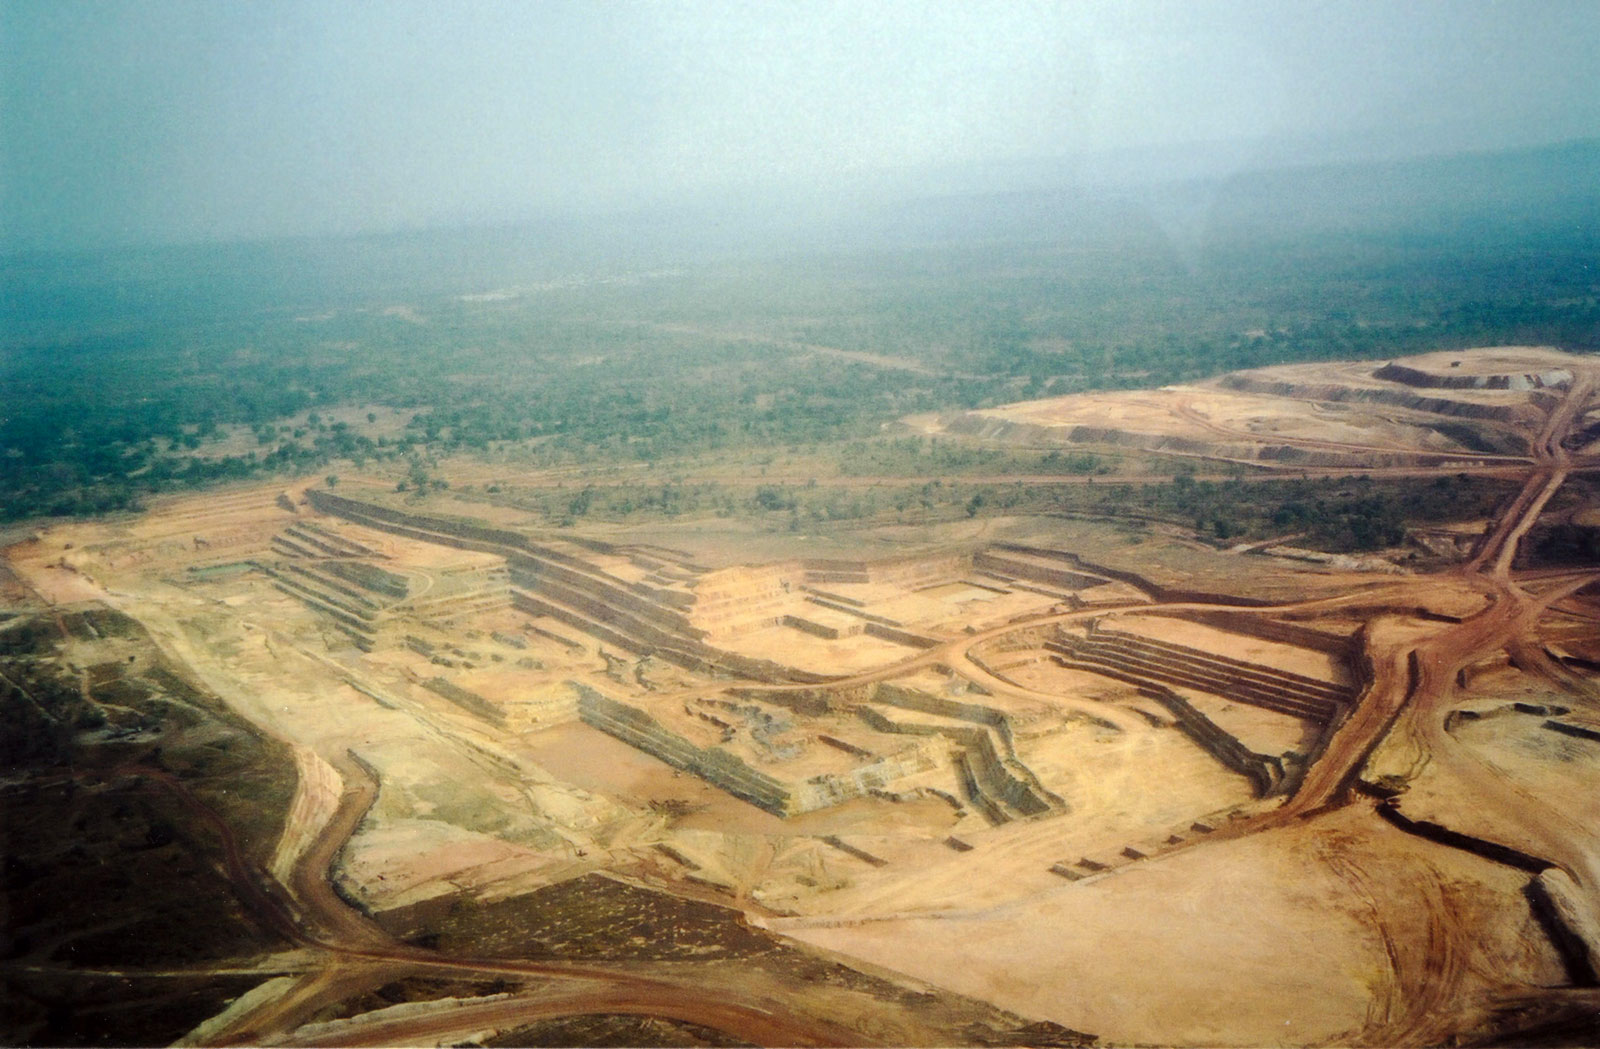 [Sadiola Mine, Mali, in 2000.]